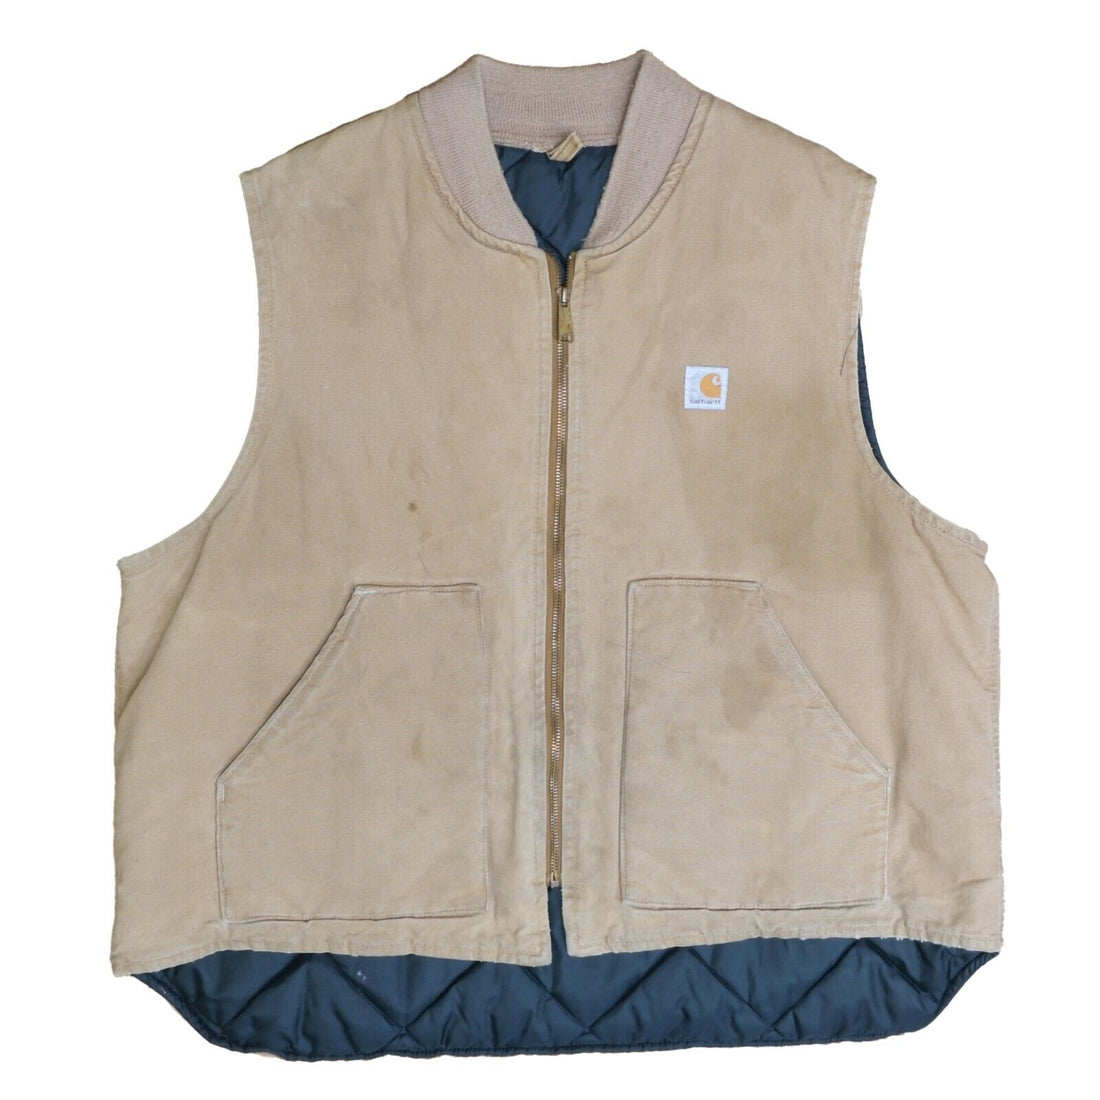 Vintage Carhartt Canvas Work Vest Jacket Size XL Tan Khaki